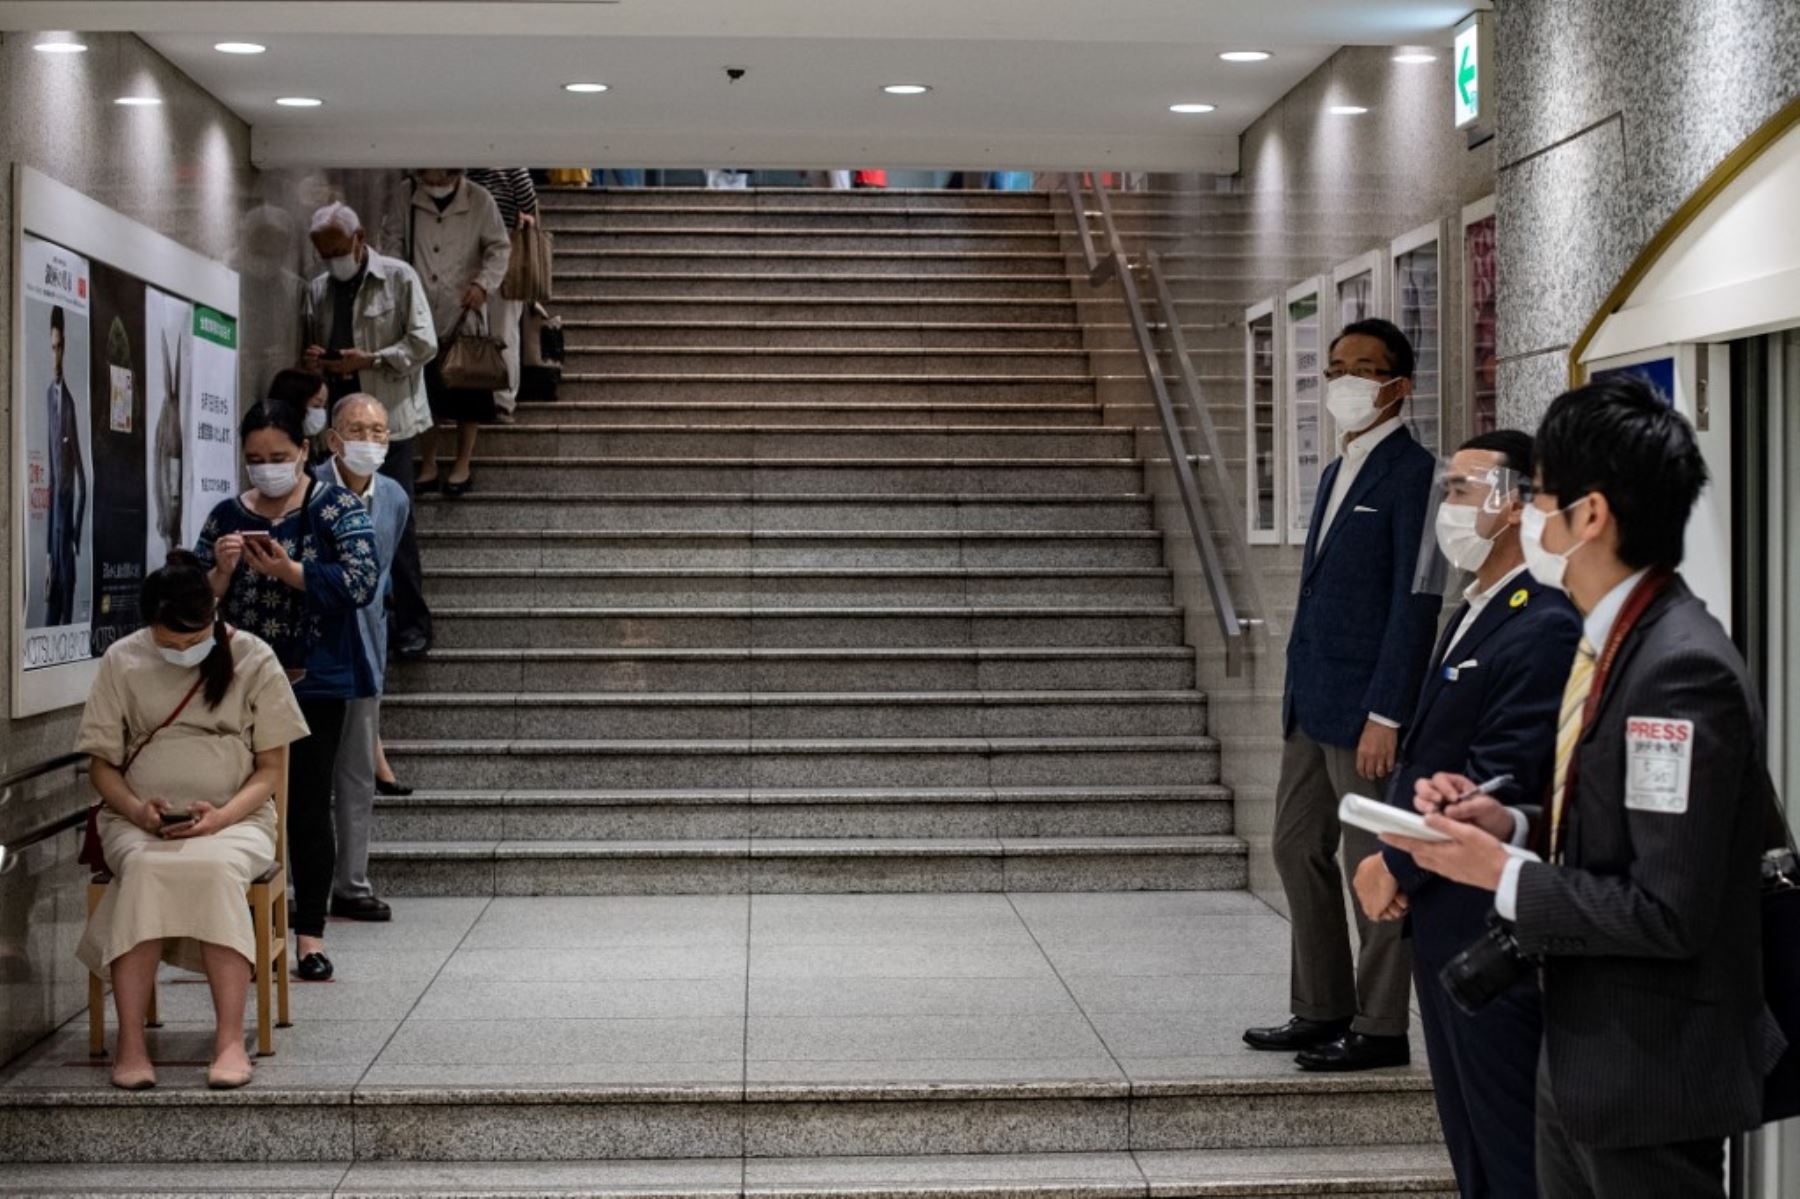 Los miembros del personal (R) con protectores faciales y máscaras esperan mientras los clientes hacen cola para ingresar a los grandes almacenes Matsuya. Foto: AFP